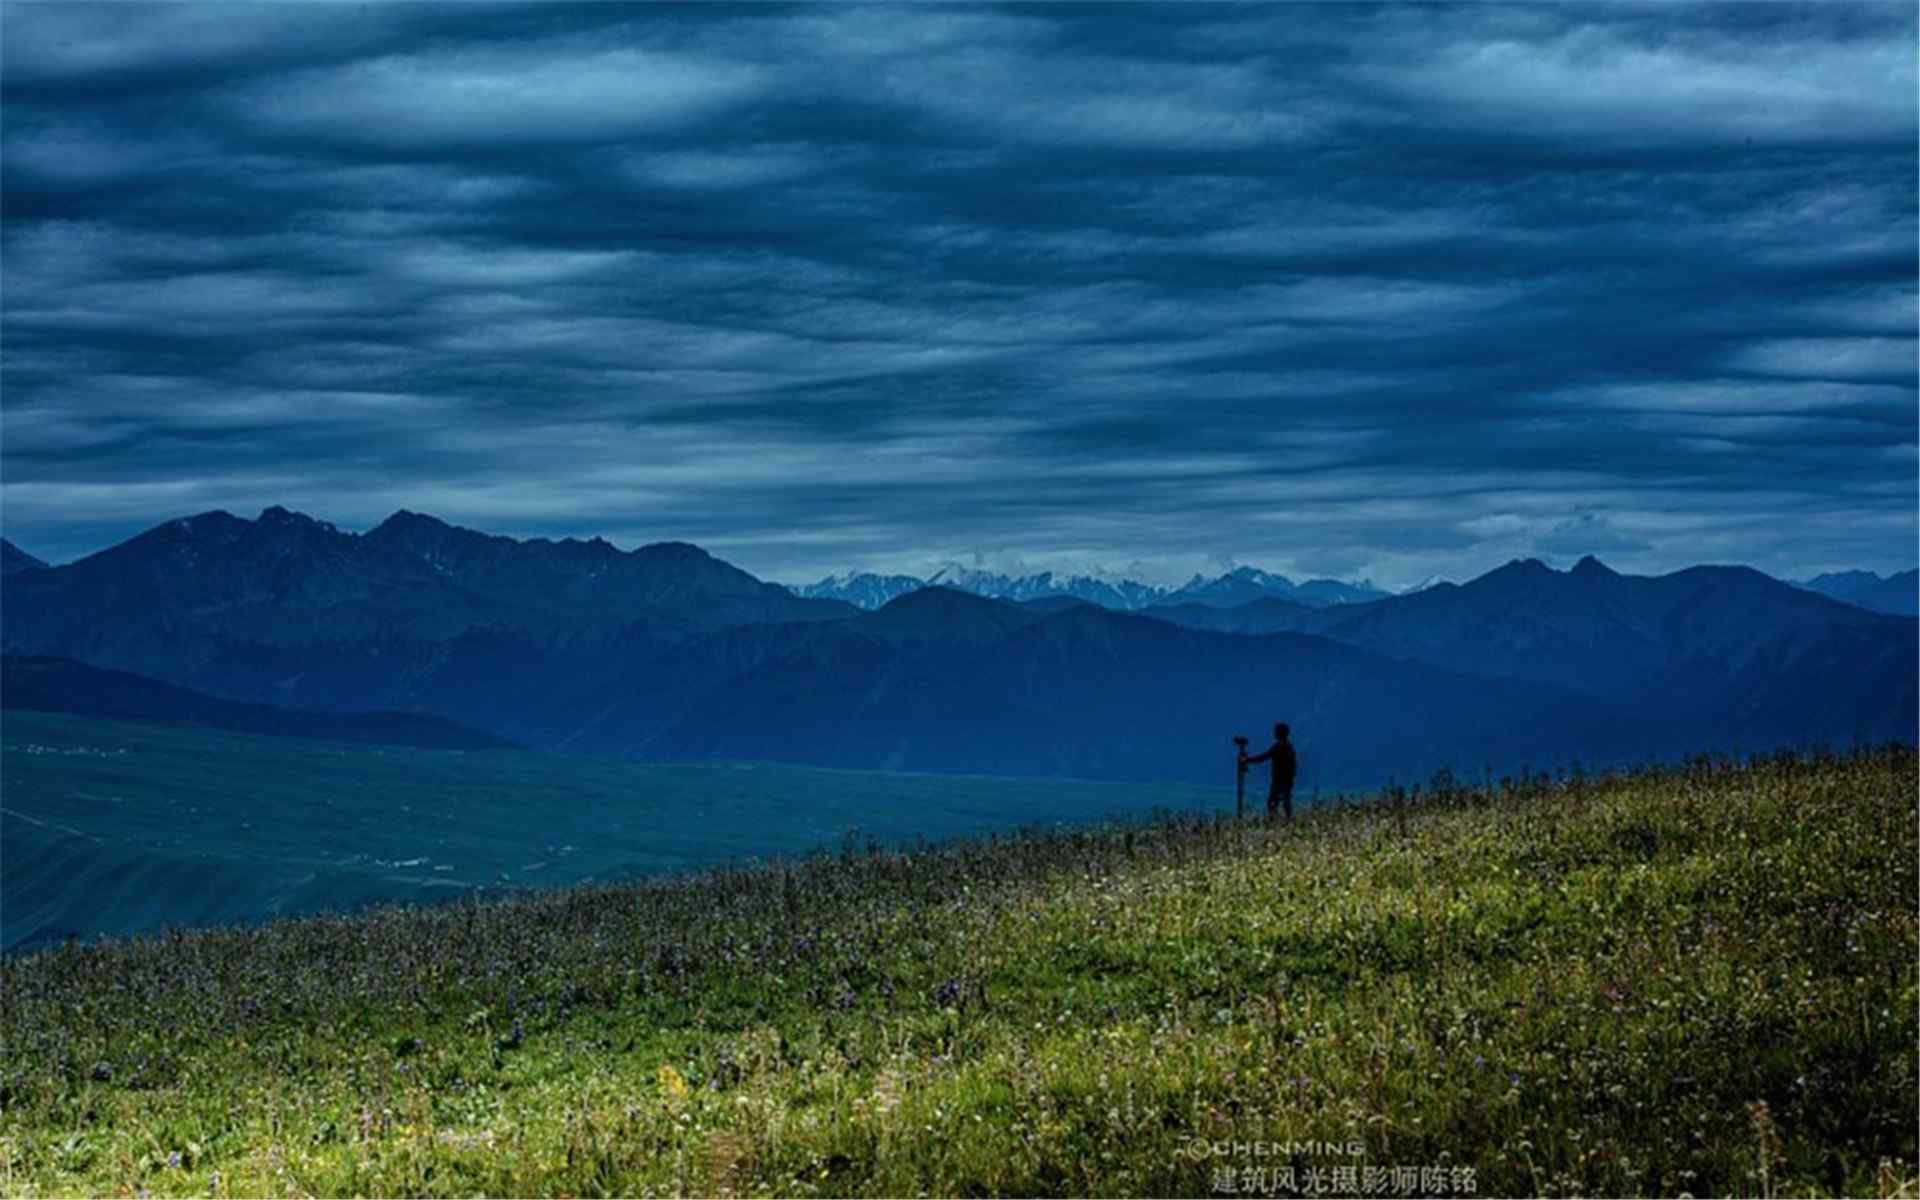 新疆天山山脉自然风景图片高清壁纸桌面